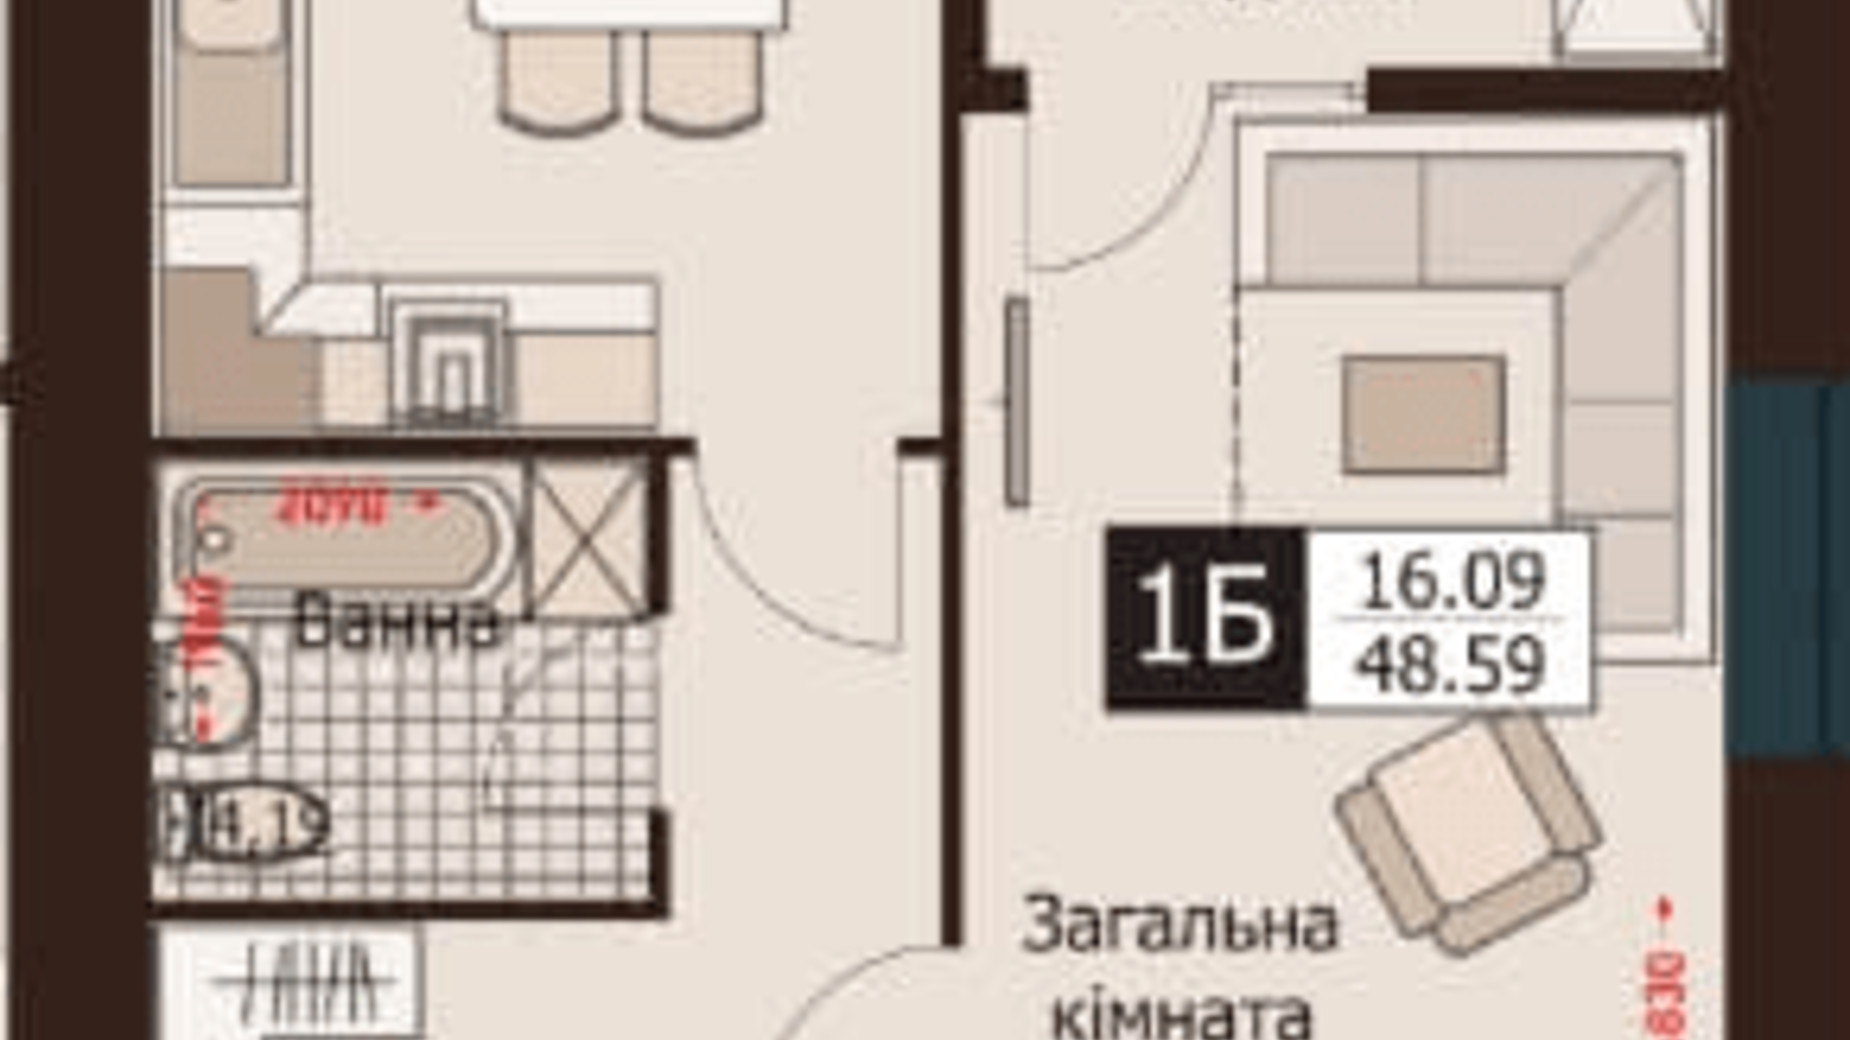 Планировка 1-комнатной квартиры в ЖК Rafinad 48.59 м², фото 495998